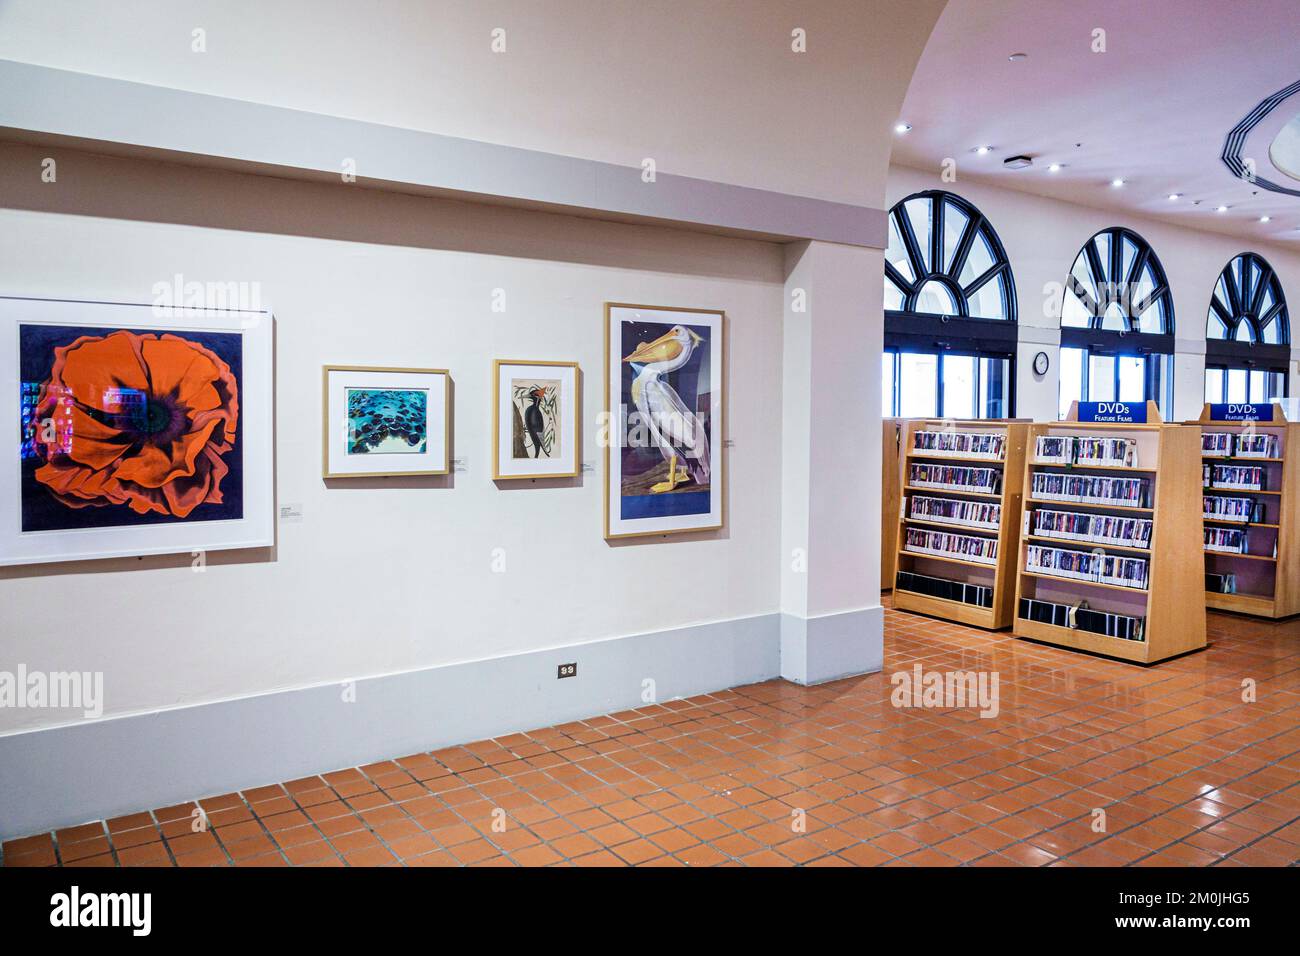 Miami Florida, bibliothèque principale, intérieur, livres d'art Banque D'Images